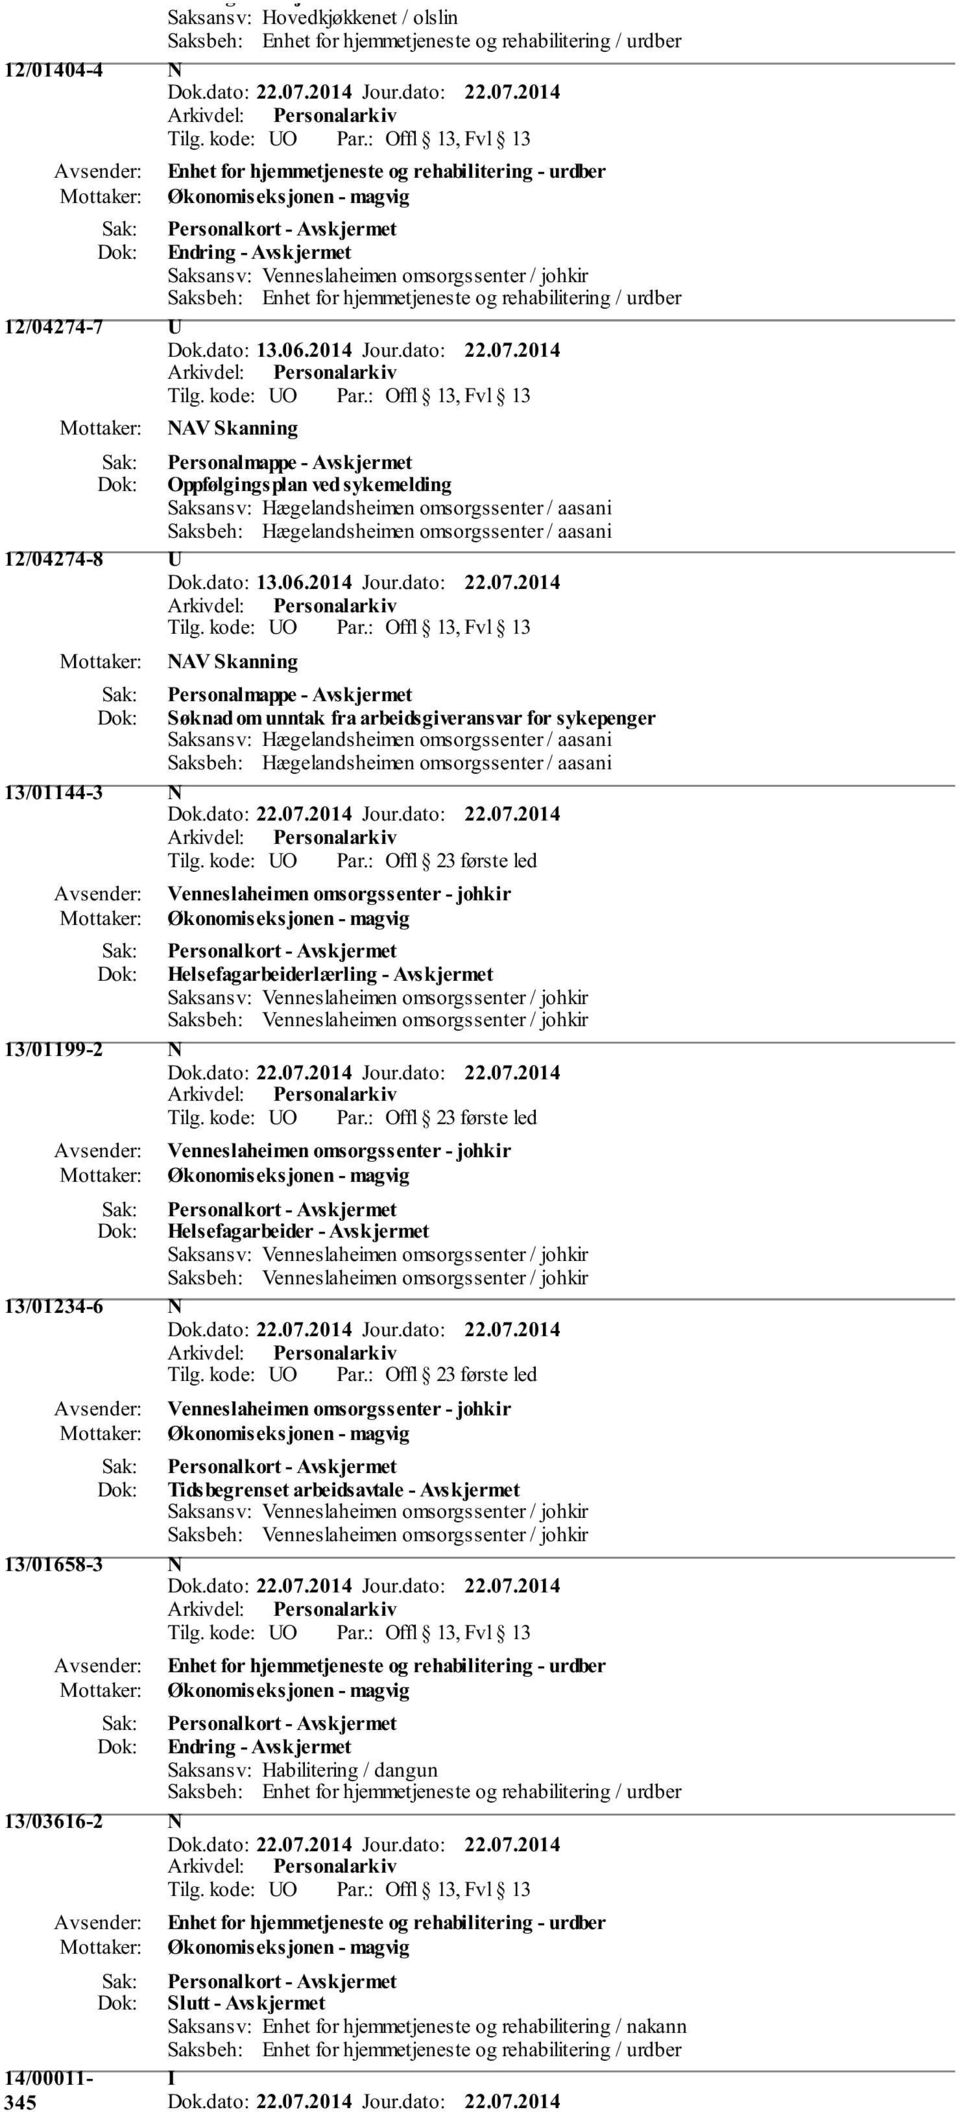 2014 NAV Skanning Personalmappe - Avskjermet Søknad om unntak fra arbeidsgiveransvar for sykepenger 13/01144-3 N Helsefagarbeiderlærling - Avskjermet 13/01199-2 N Helsefagarbeider